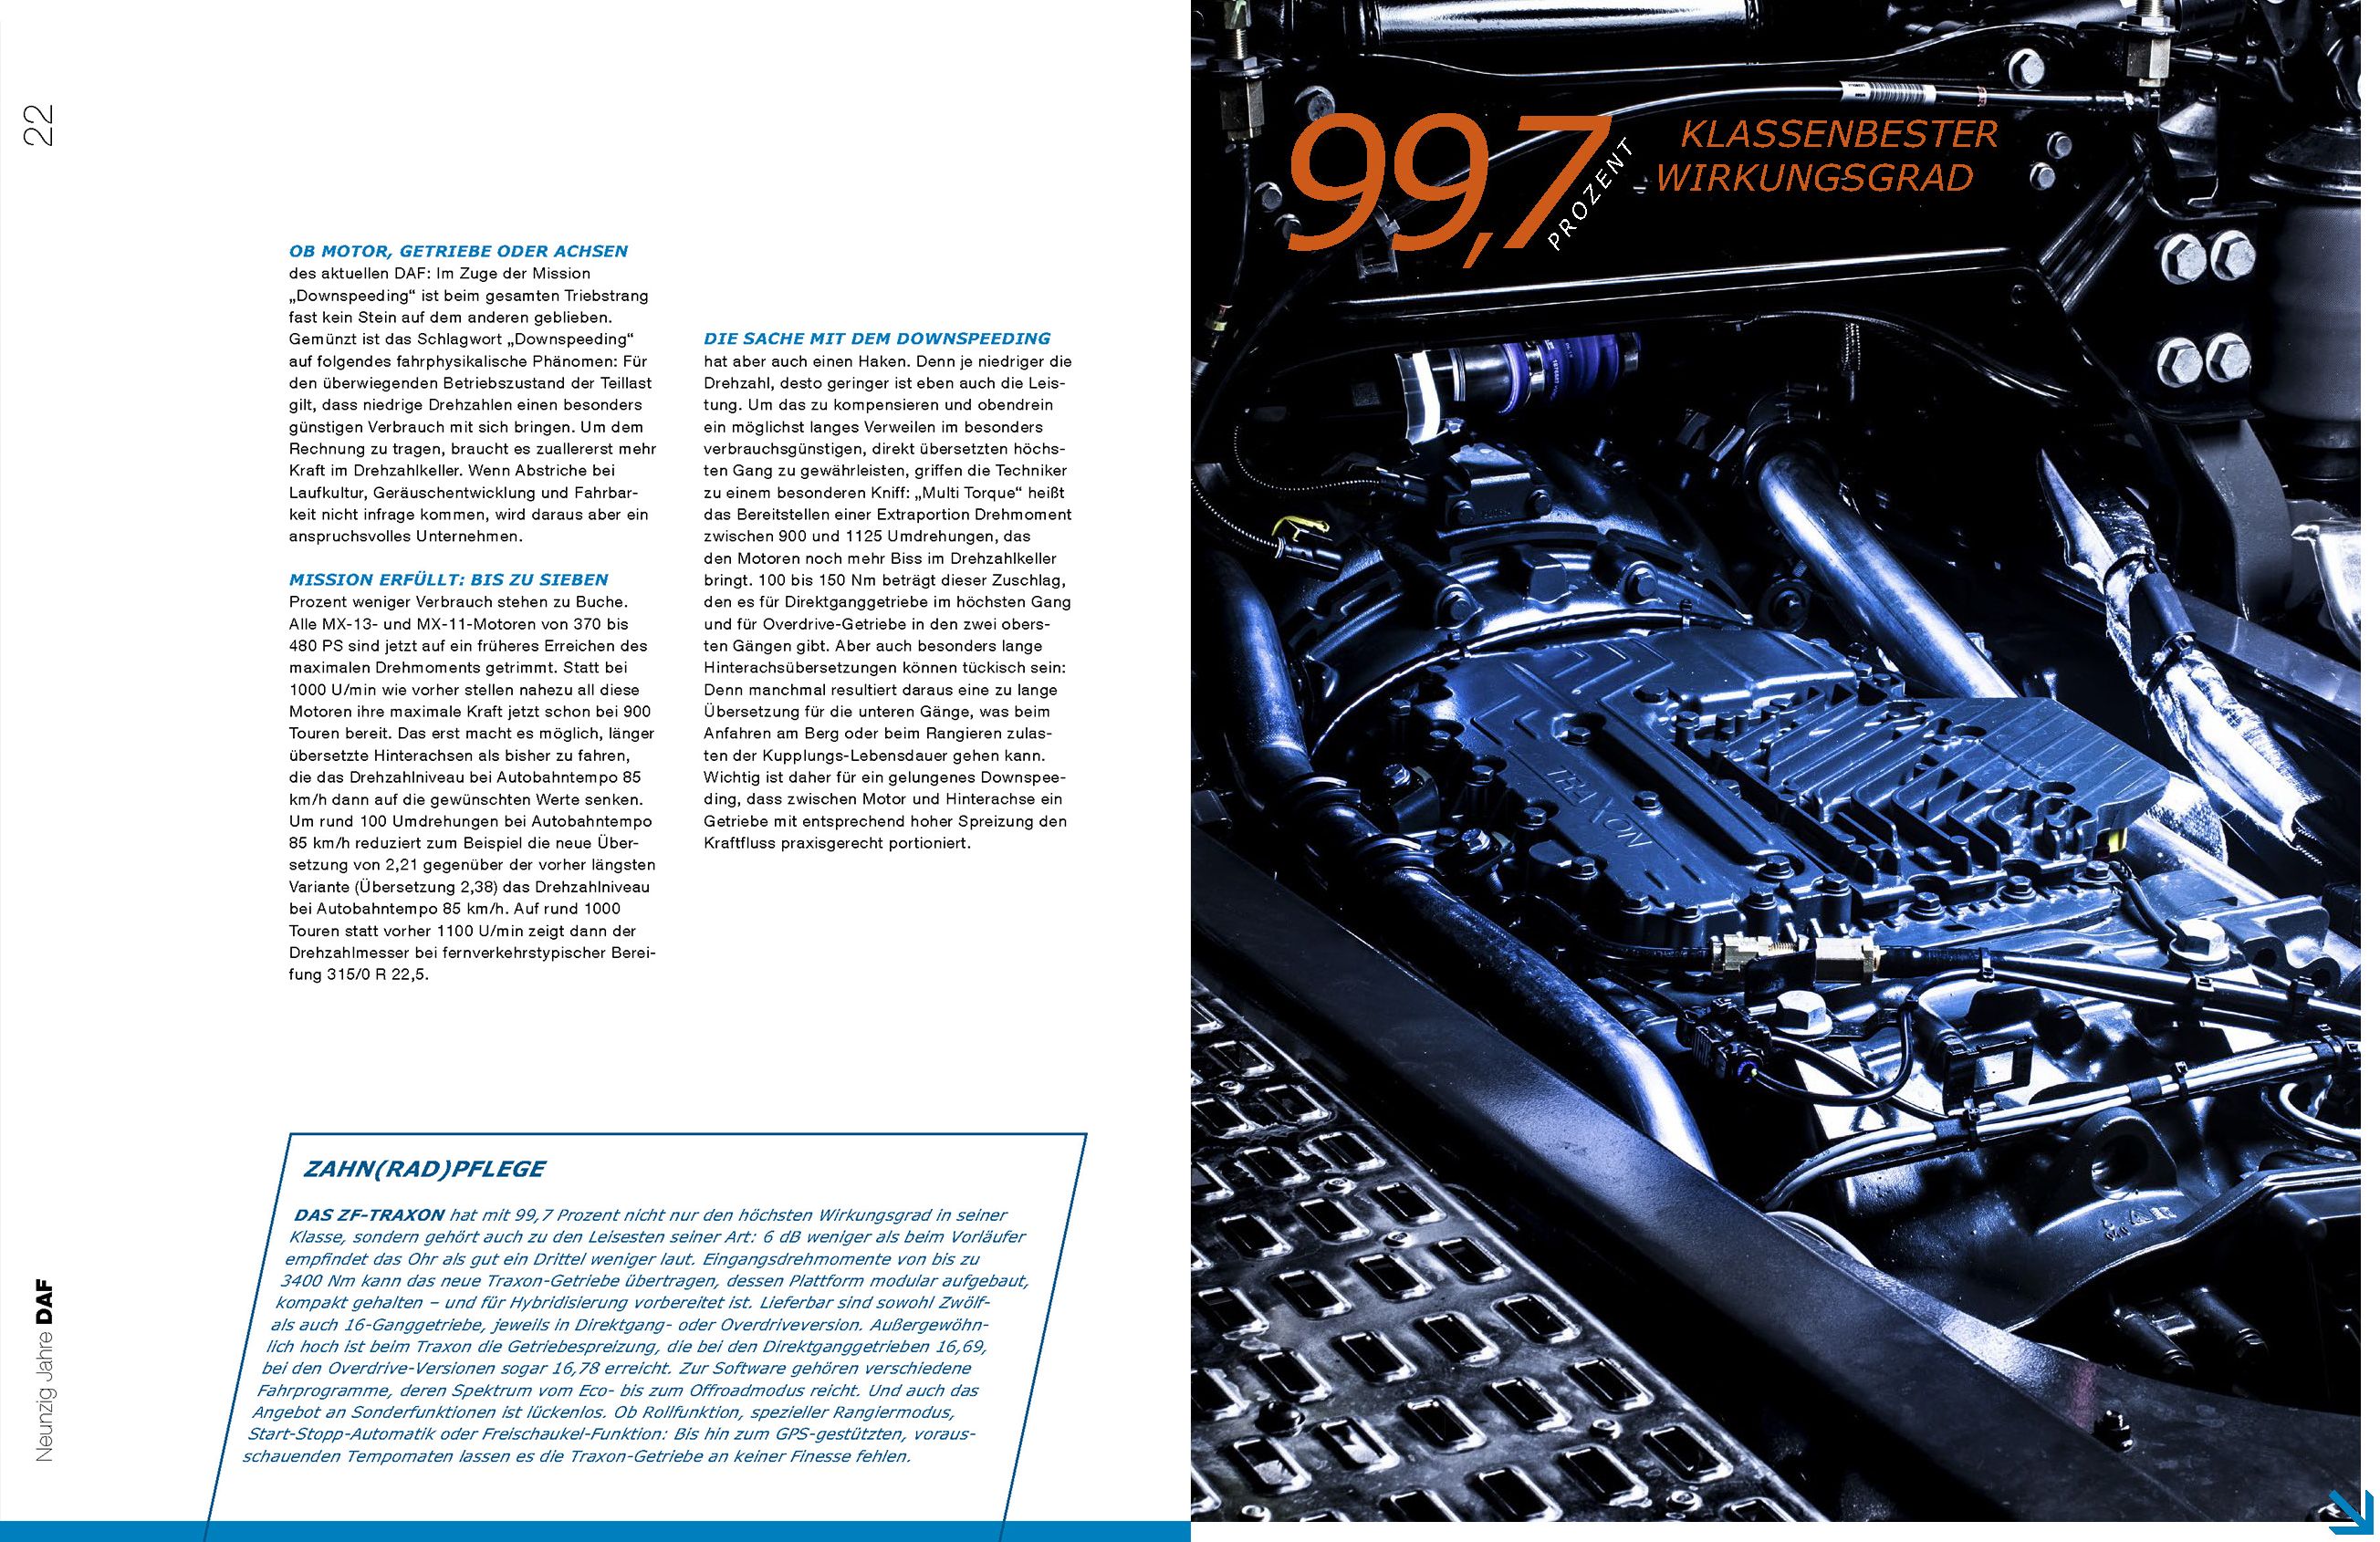 Getriebe Traxxon von Truck beleuchtet in Magazin für IAA